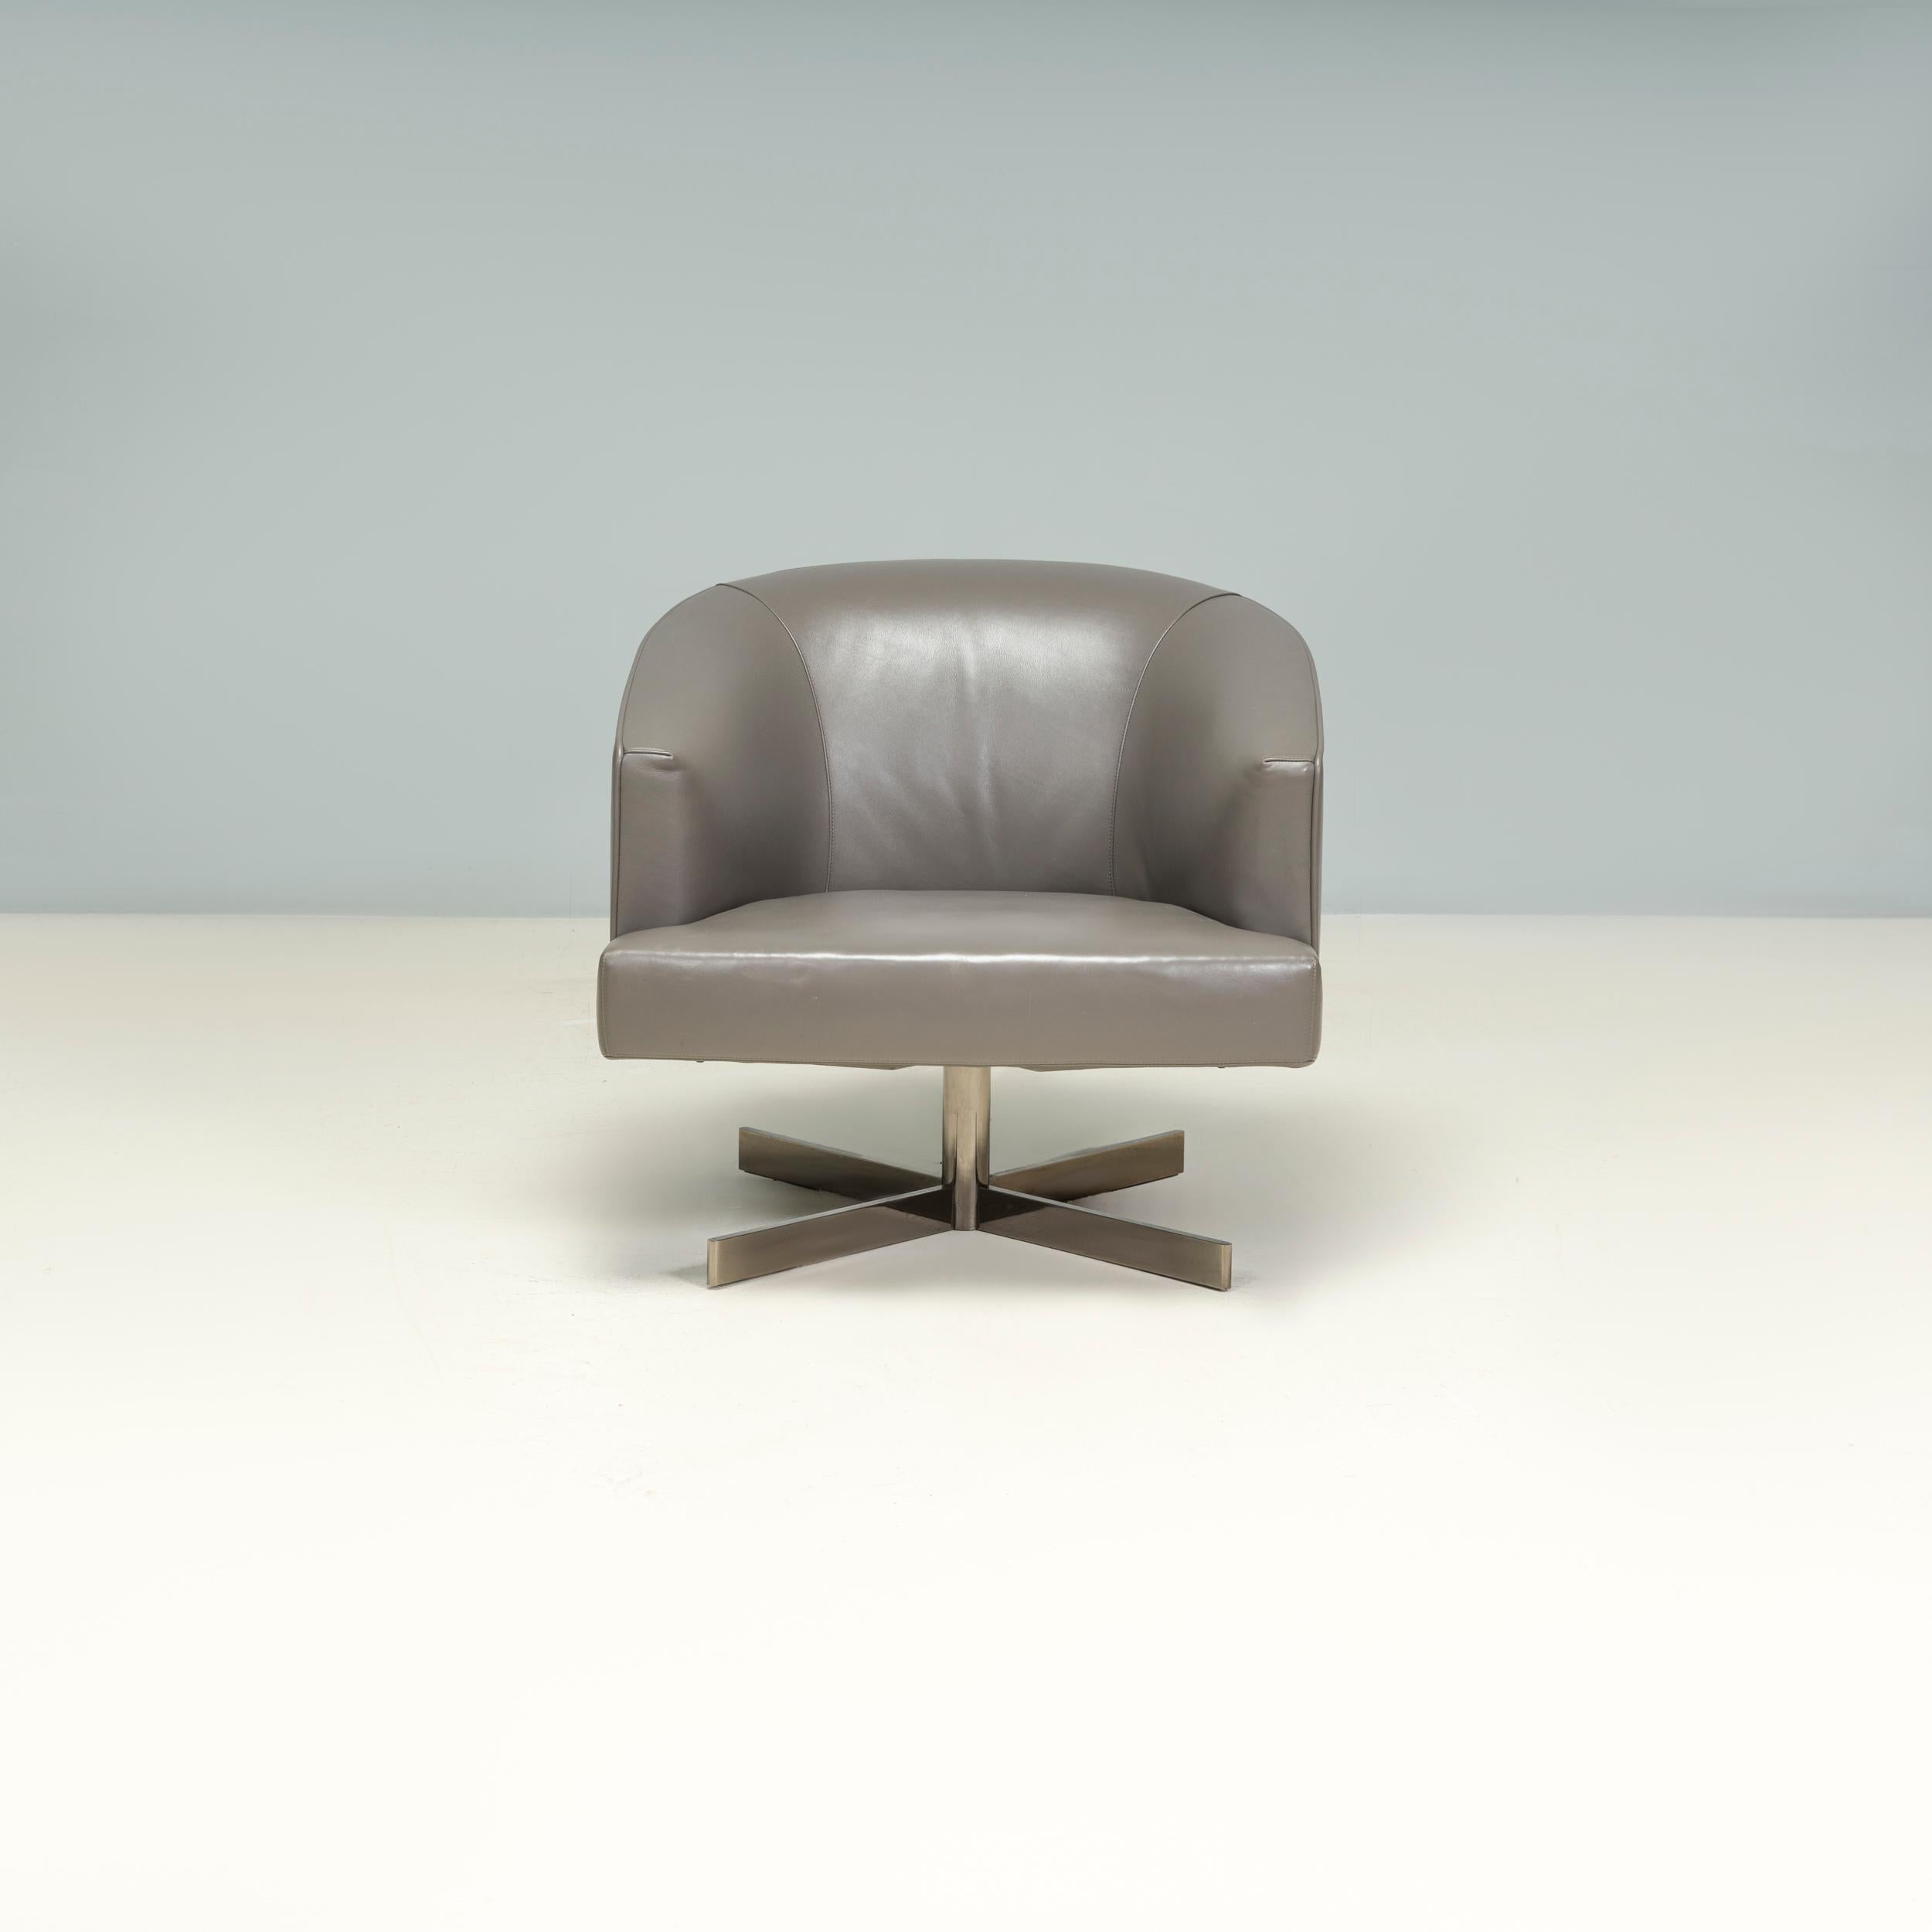 Der von Rodolfo Dordoni für Minotti entworfene Sessel Martin ist ein fantastisches Beispiel für elegantes zeitgenössisches italienisches Design.

Der Stuhl hat ein quadratisches Sitzkissen und eine sanft geschwungene Rückenlehne und ist vollständig